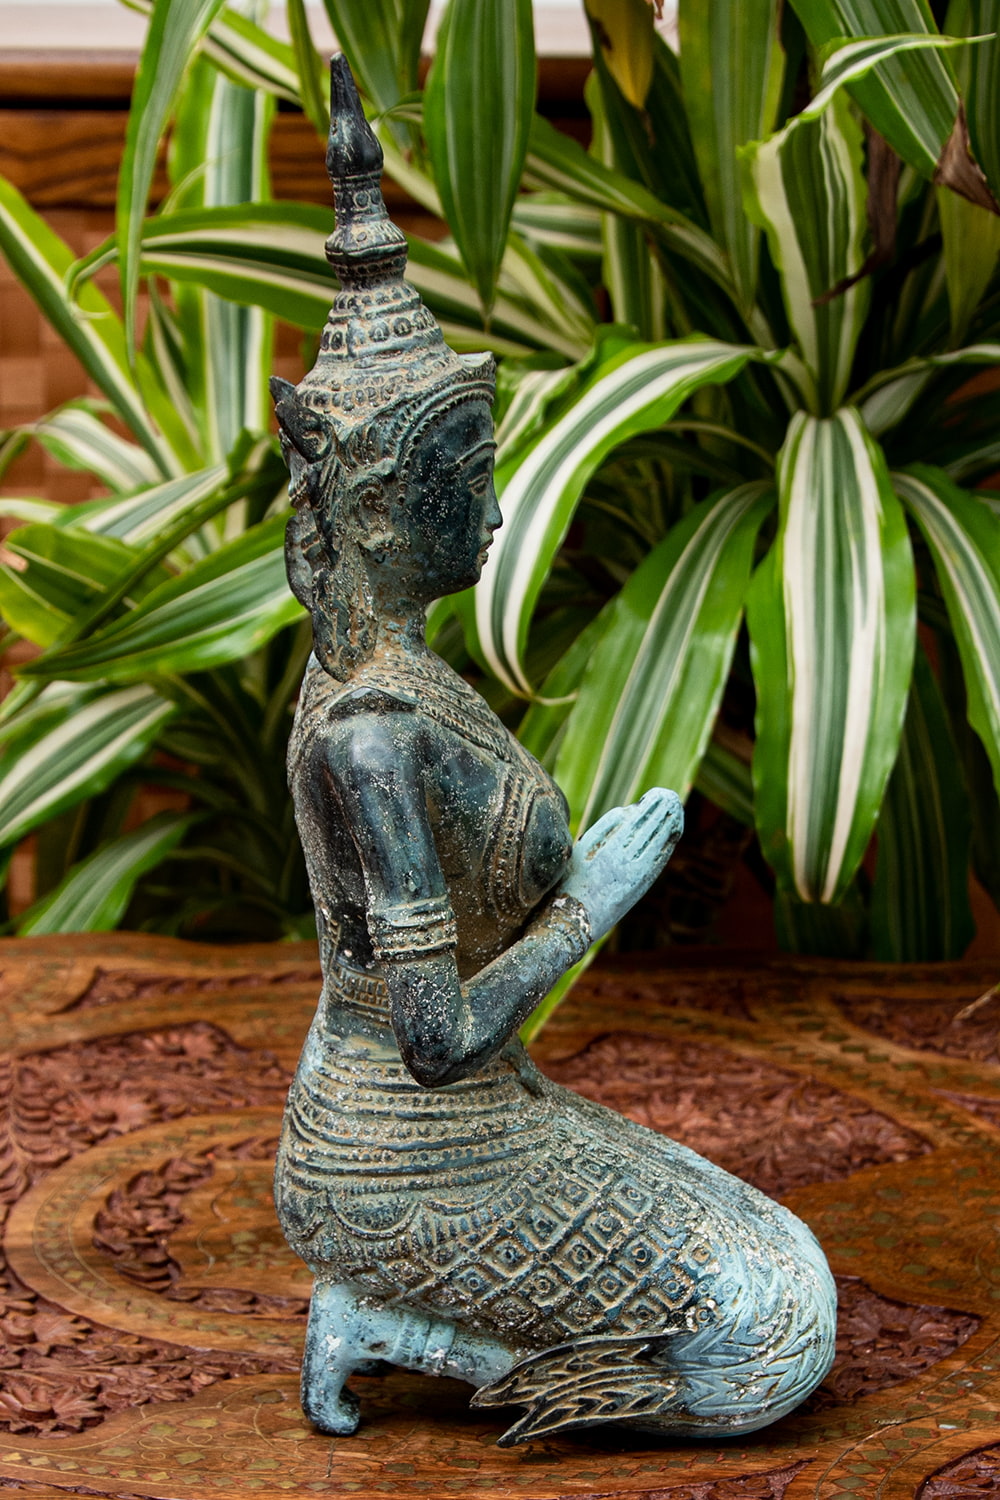 送料無料 神様像 インドネシア バリ ラーマ インドネシアの神様像 32cm シータ 置物 エスニック アジア 雑貨 ホビー、カルチャー 美術品  東洋彫刻